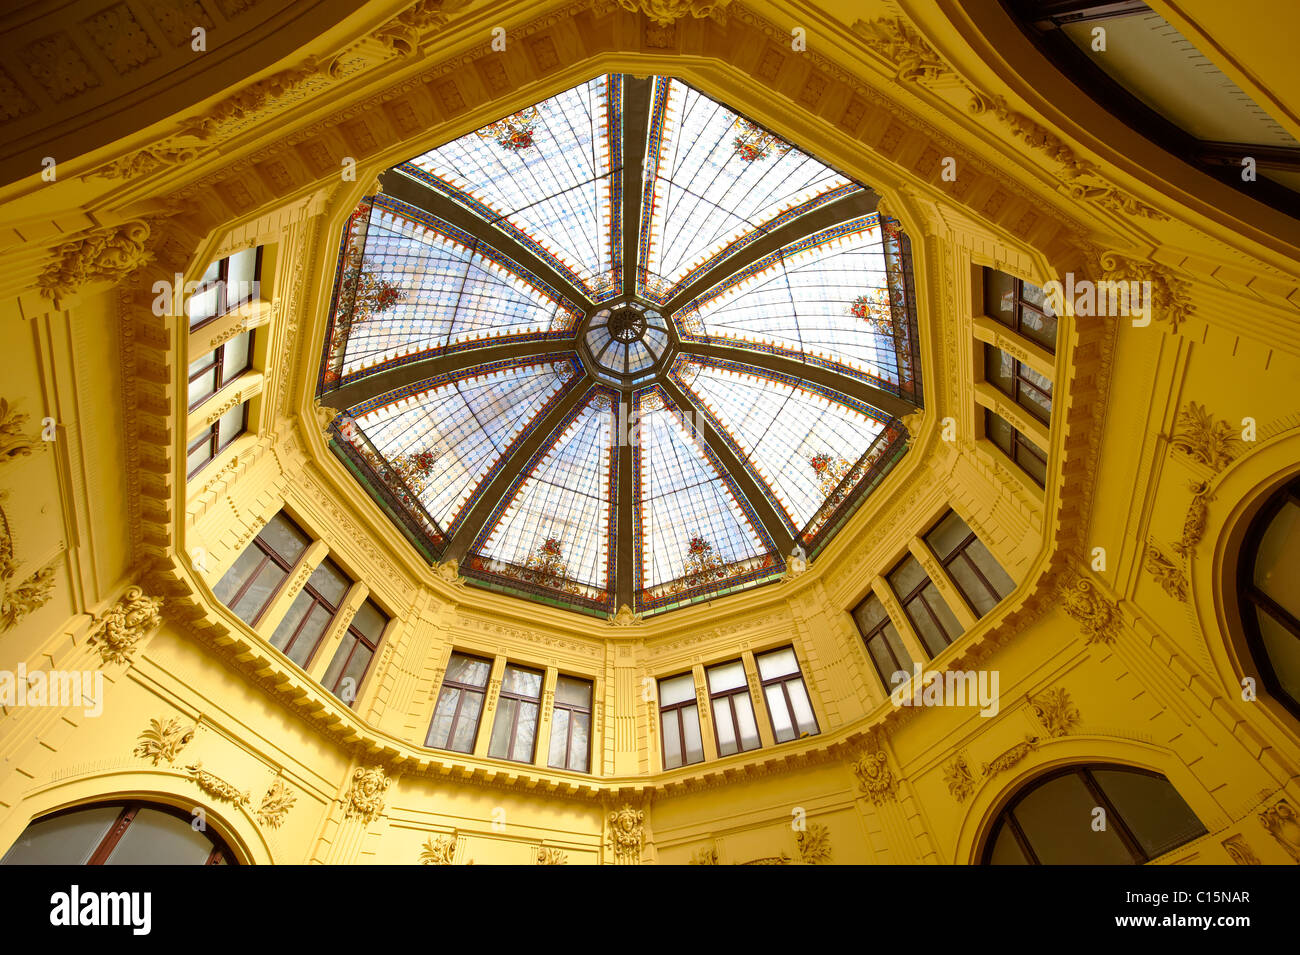 Octogon et son toit en verre teinté, la première banque d'épargne de la Croatie [ 1898-1900 ] bâtiment. , Zagreb, Croatie Banque D'Images